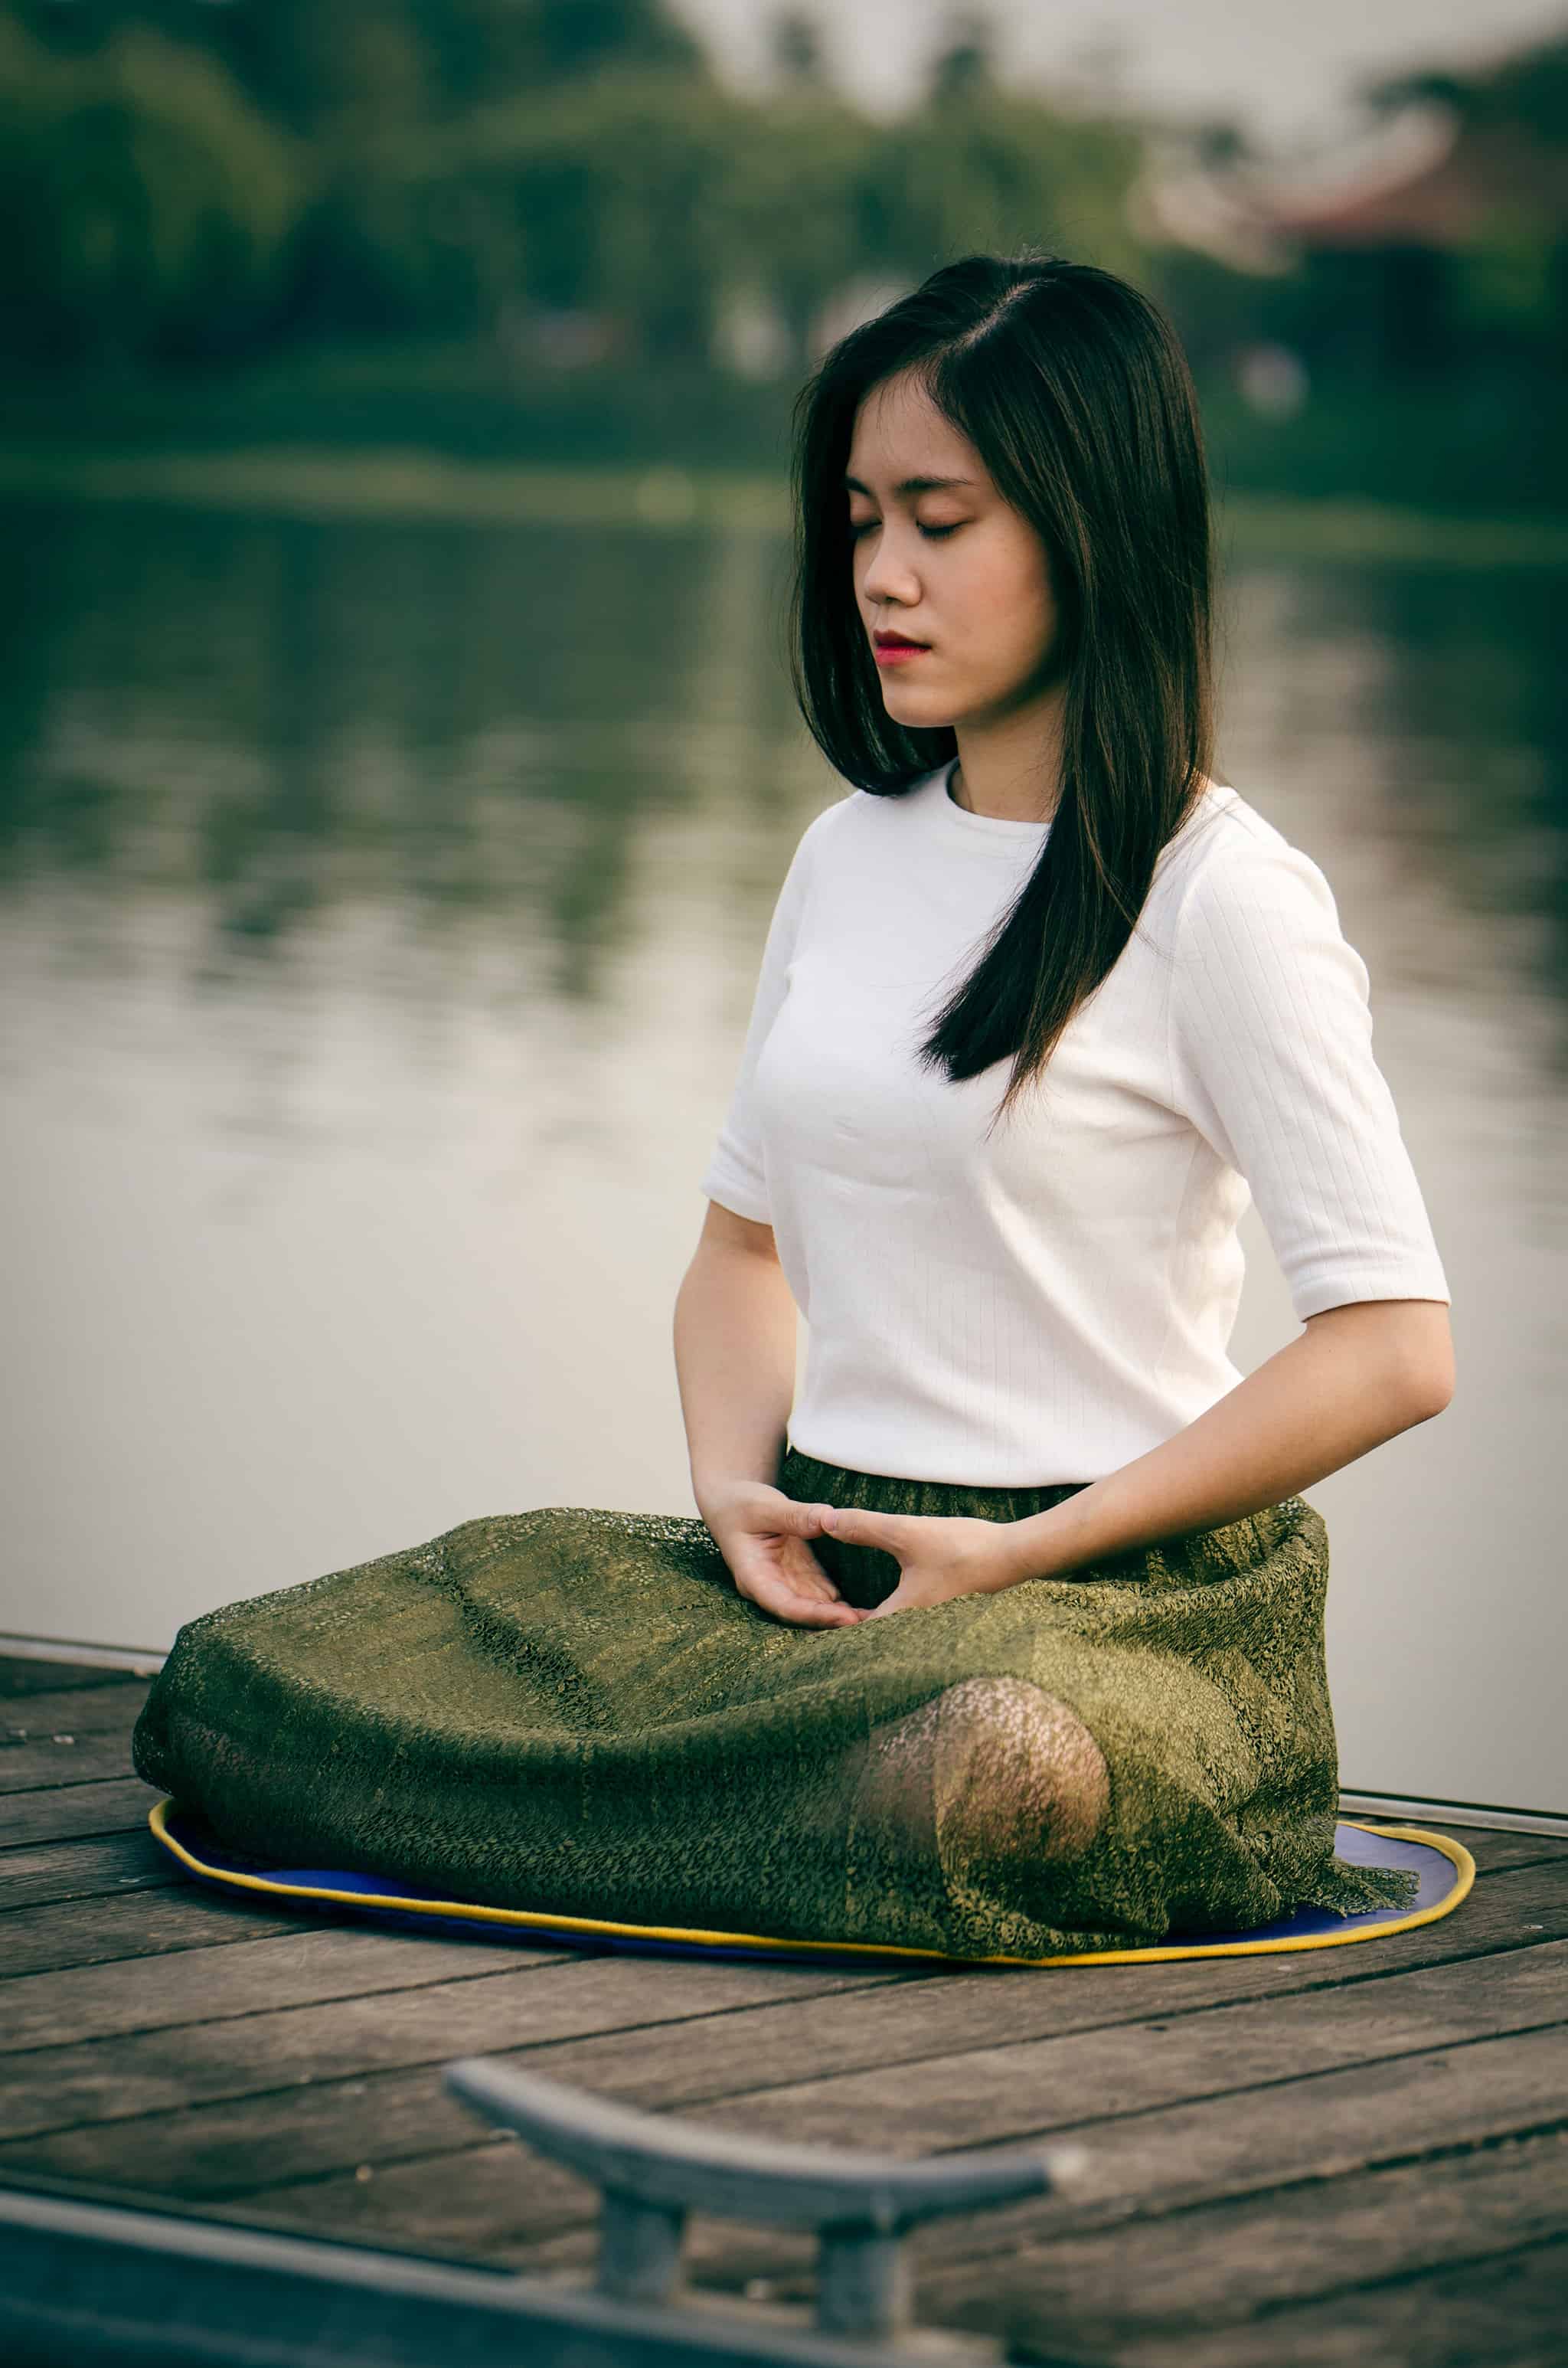 Rechtenvrije foto van mediterende vrouw van Le Minh Phuong via Unsplash